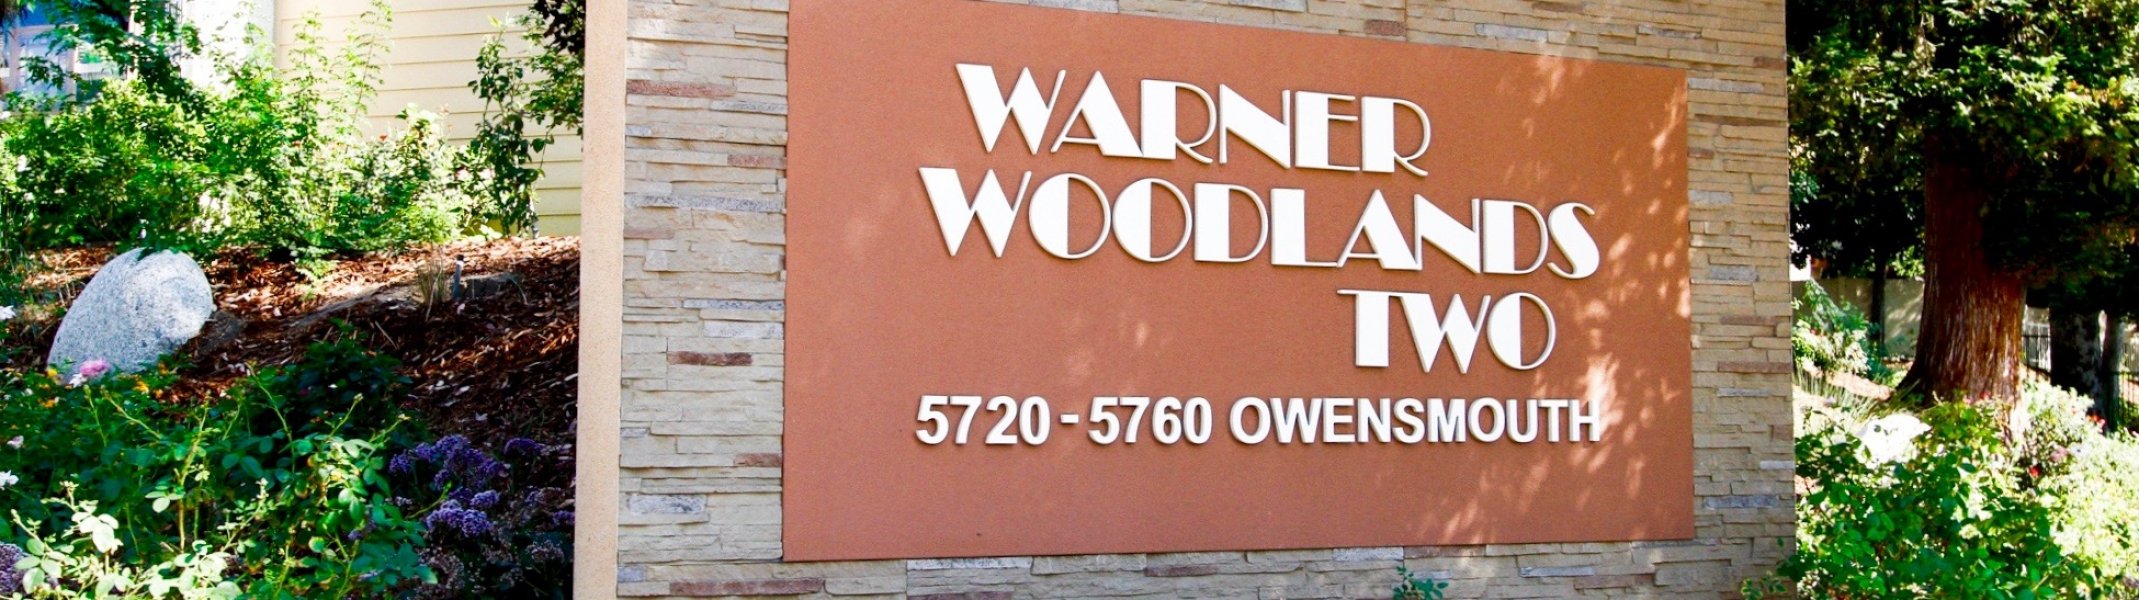 Warner Woodlands Two